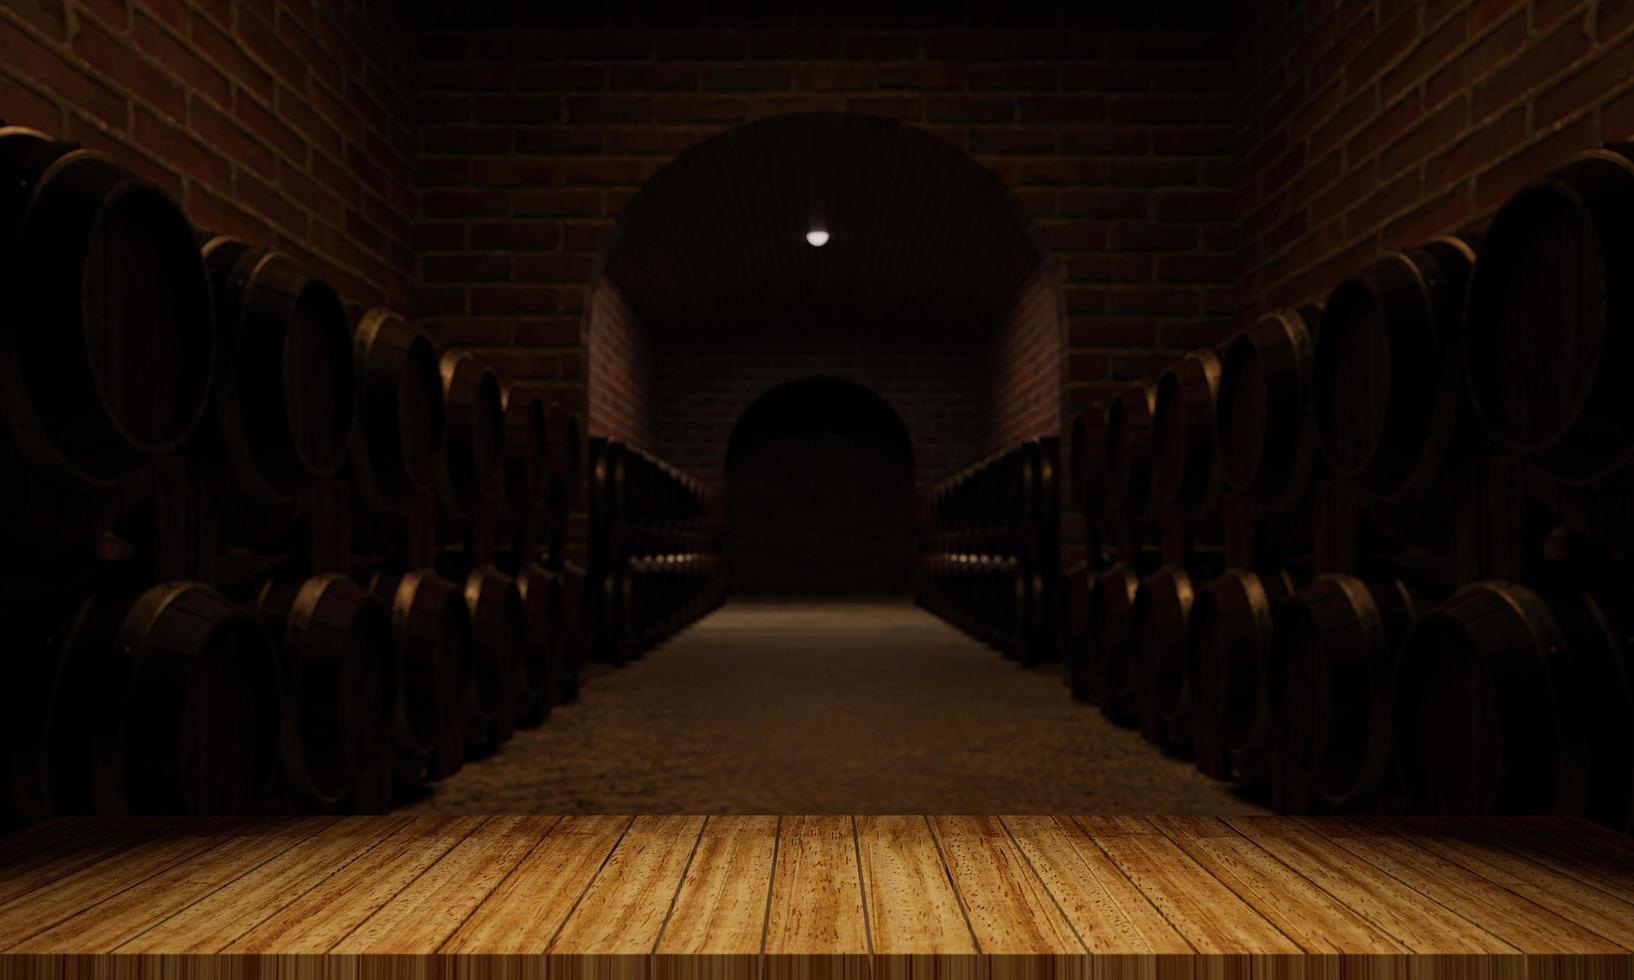 botti di legno per la fermentazione del vino. spazio per lo stoccaggio di più serbatoi di fermentazione del vino. il muro di mattoni è rosso-arancio. rendering 3D foto